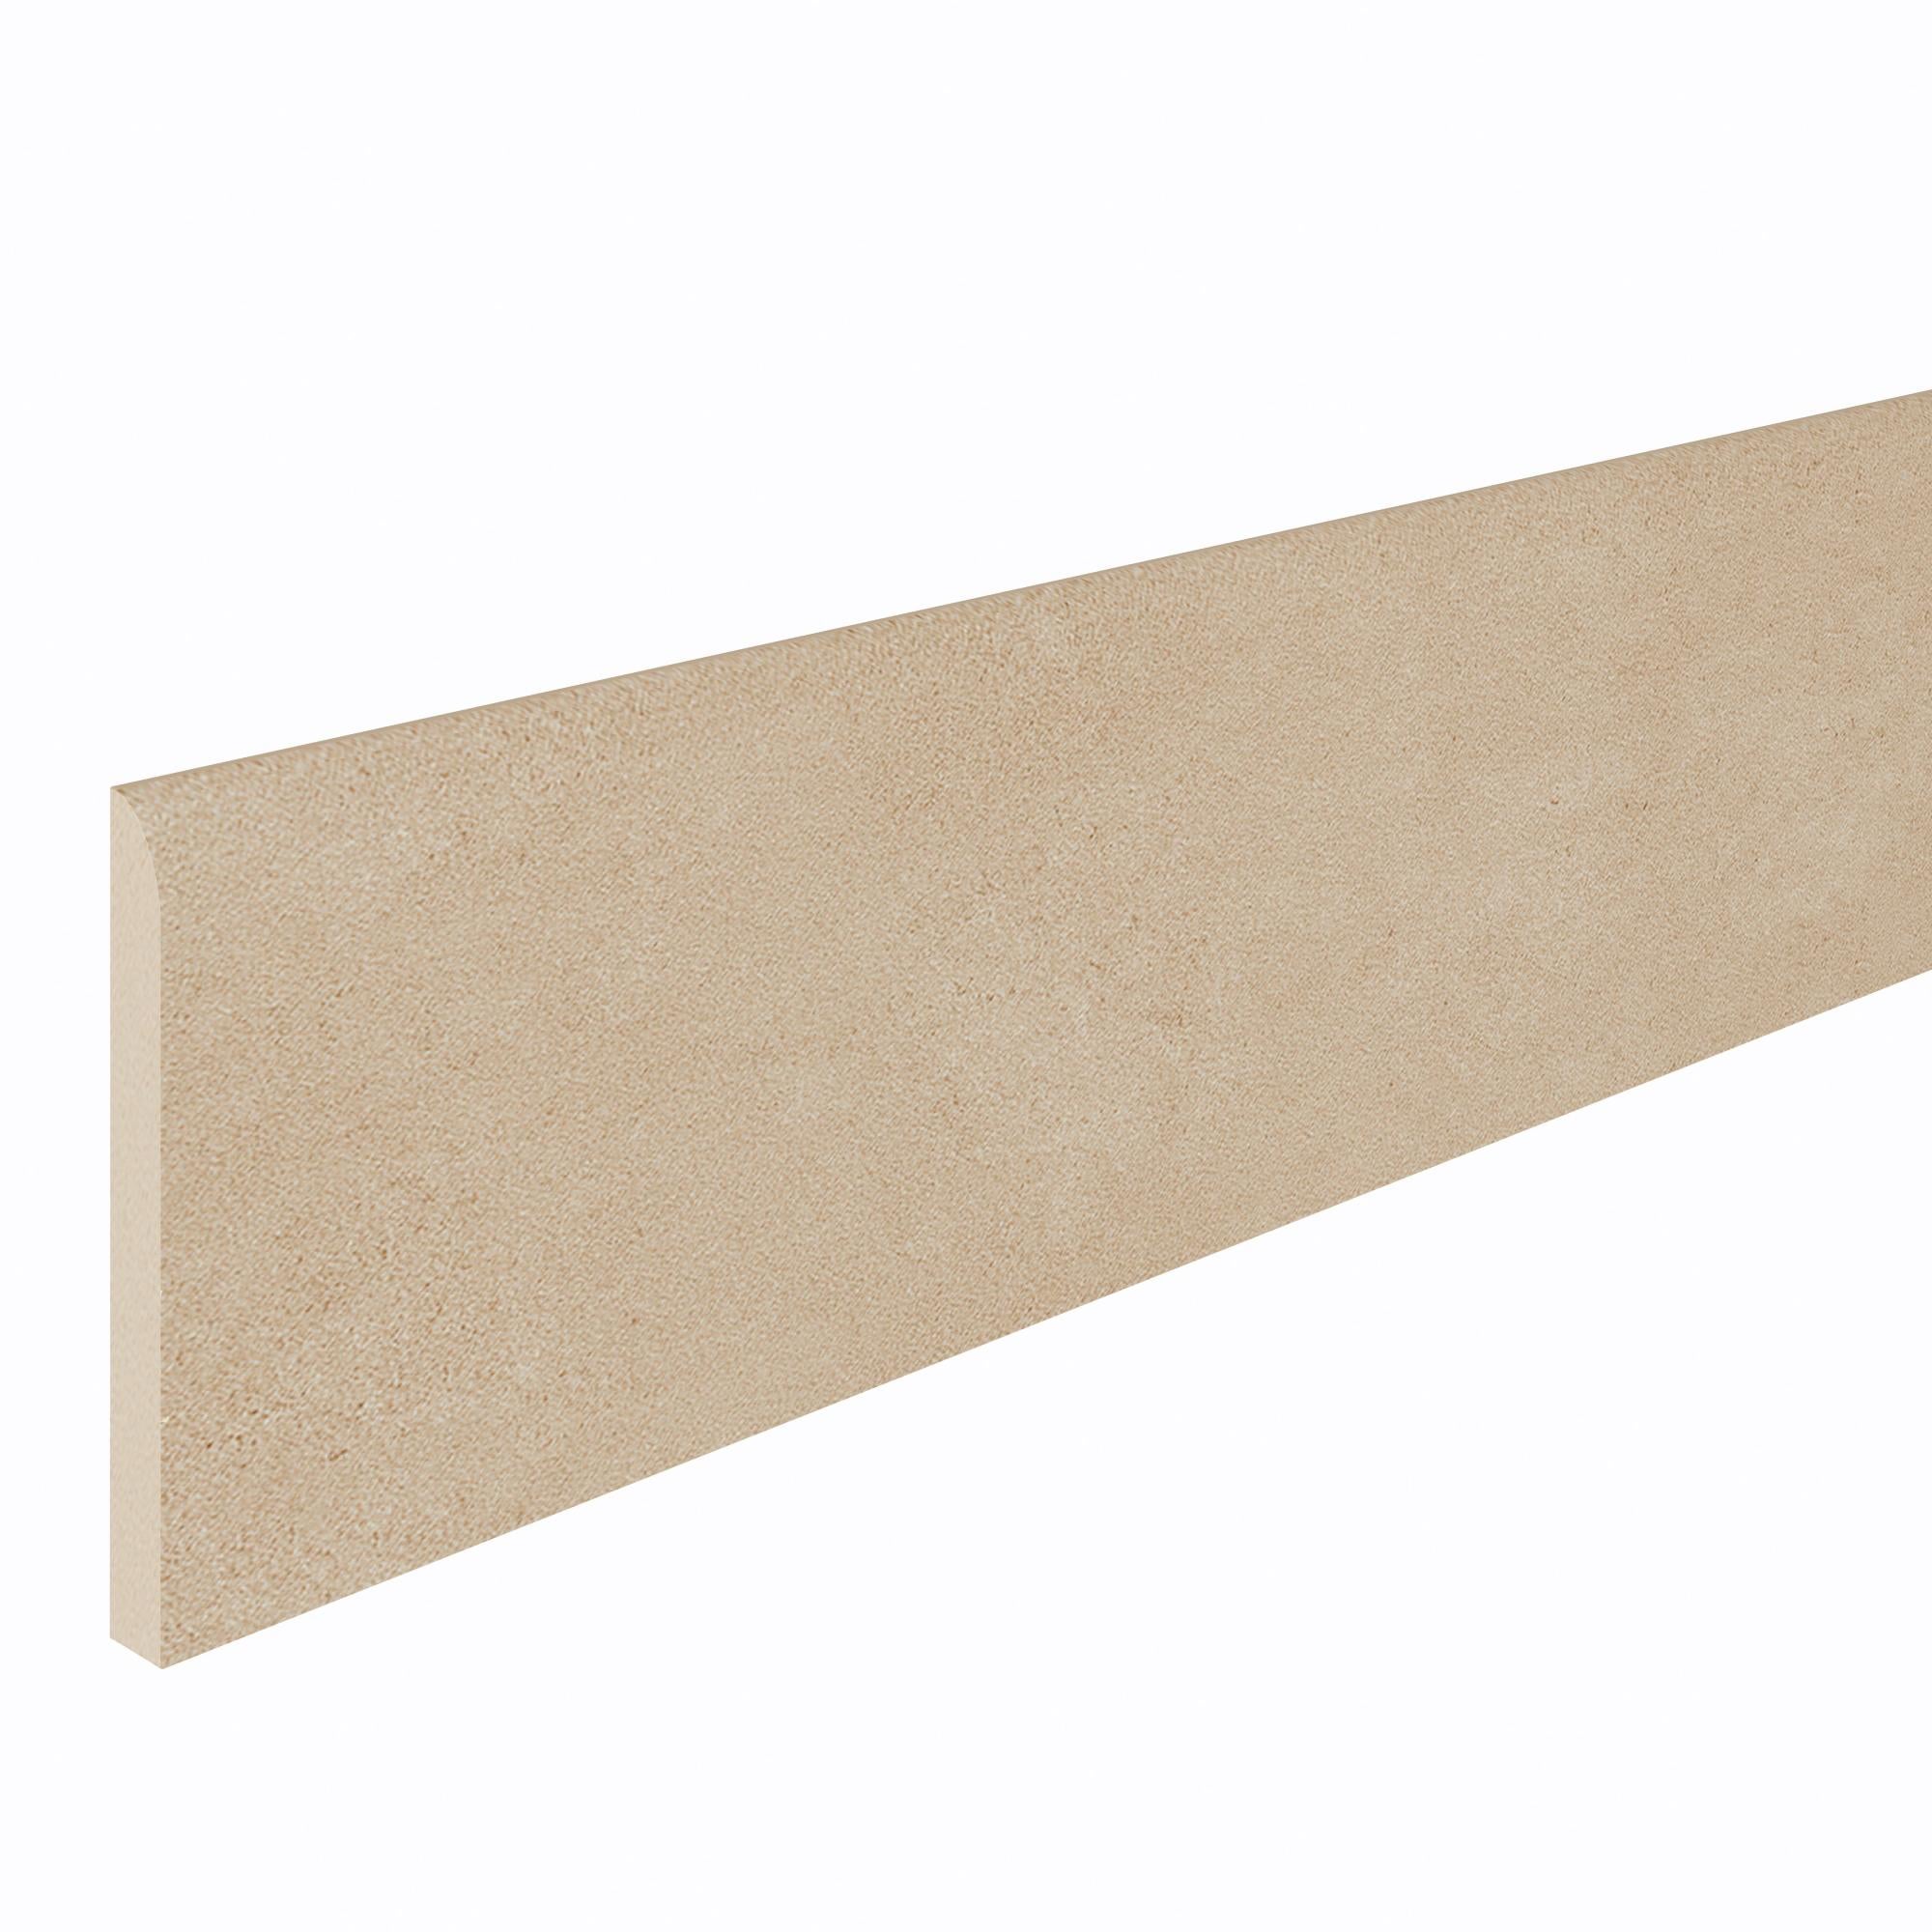 Pack de 4 rodapiés artens cemento 10x60 cm beige